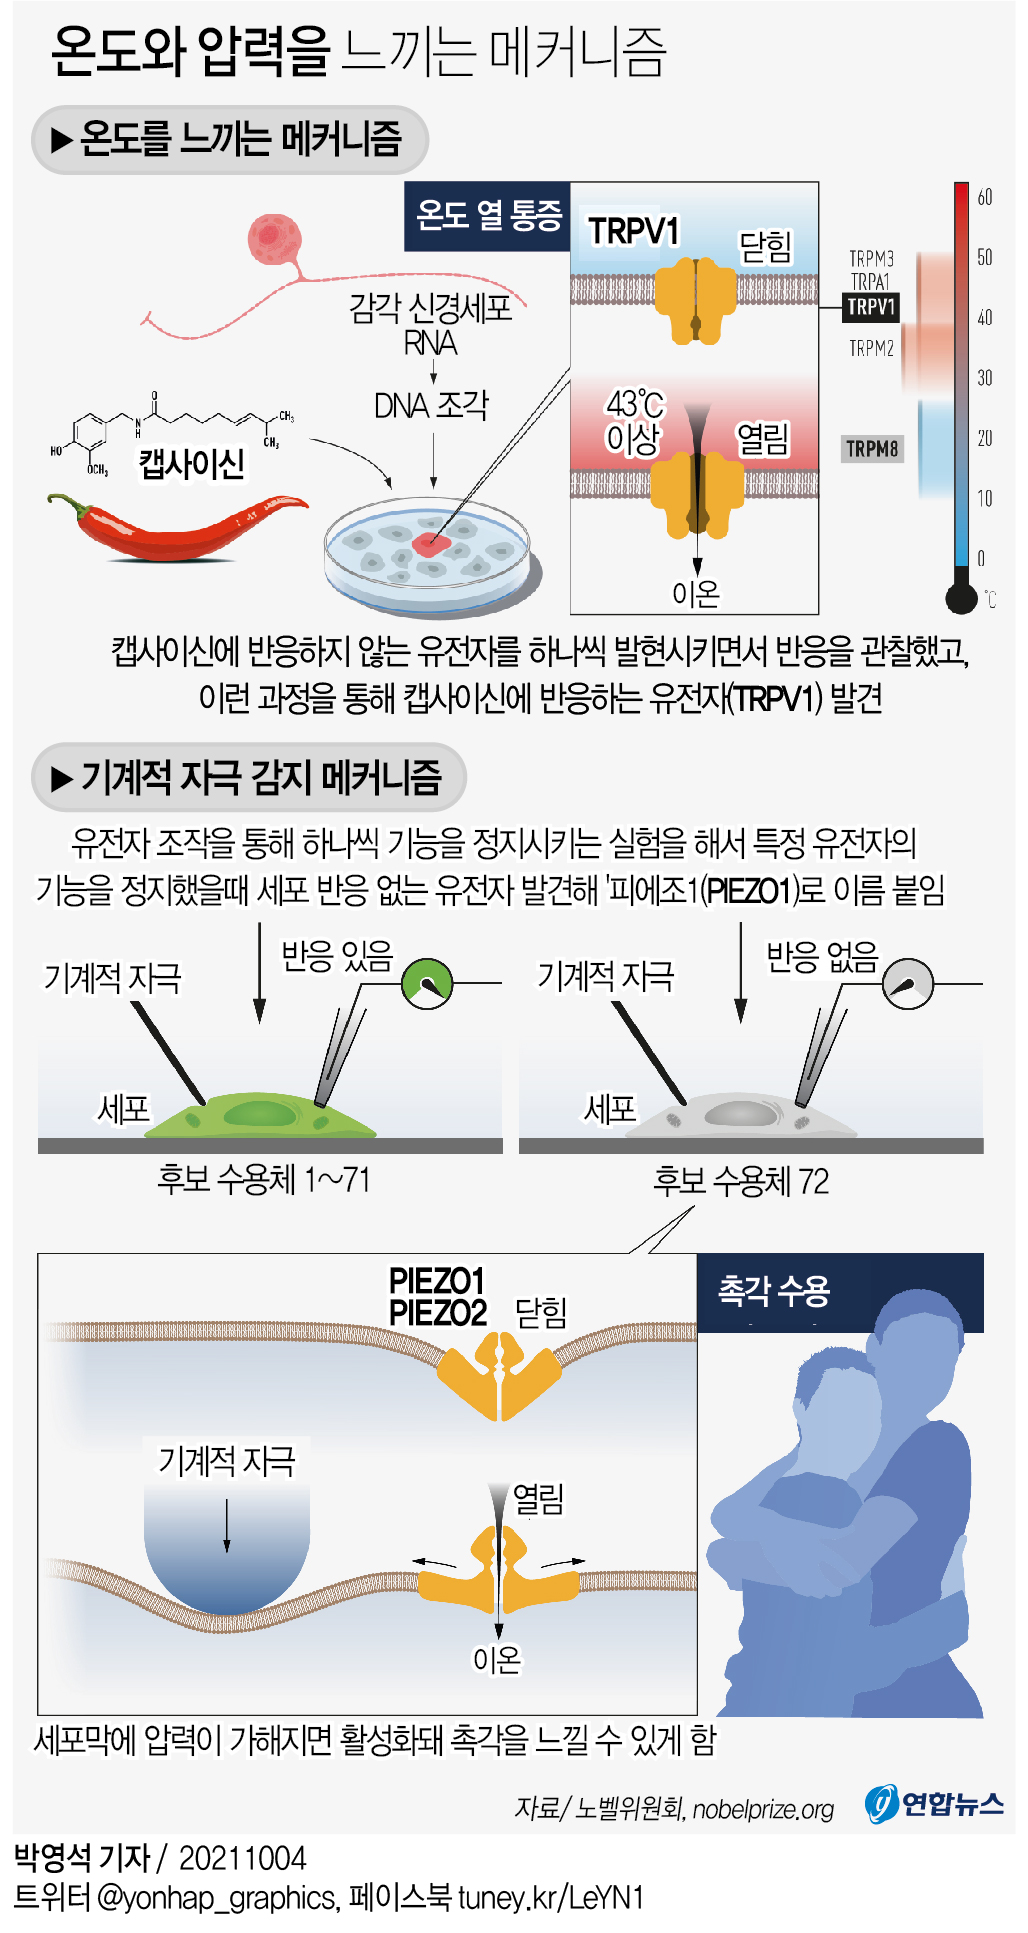 [그래픽] 온도와 압력을 느끼는 메커니즘